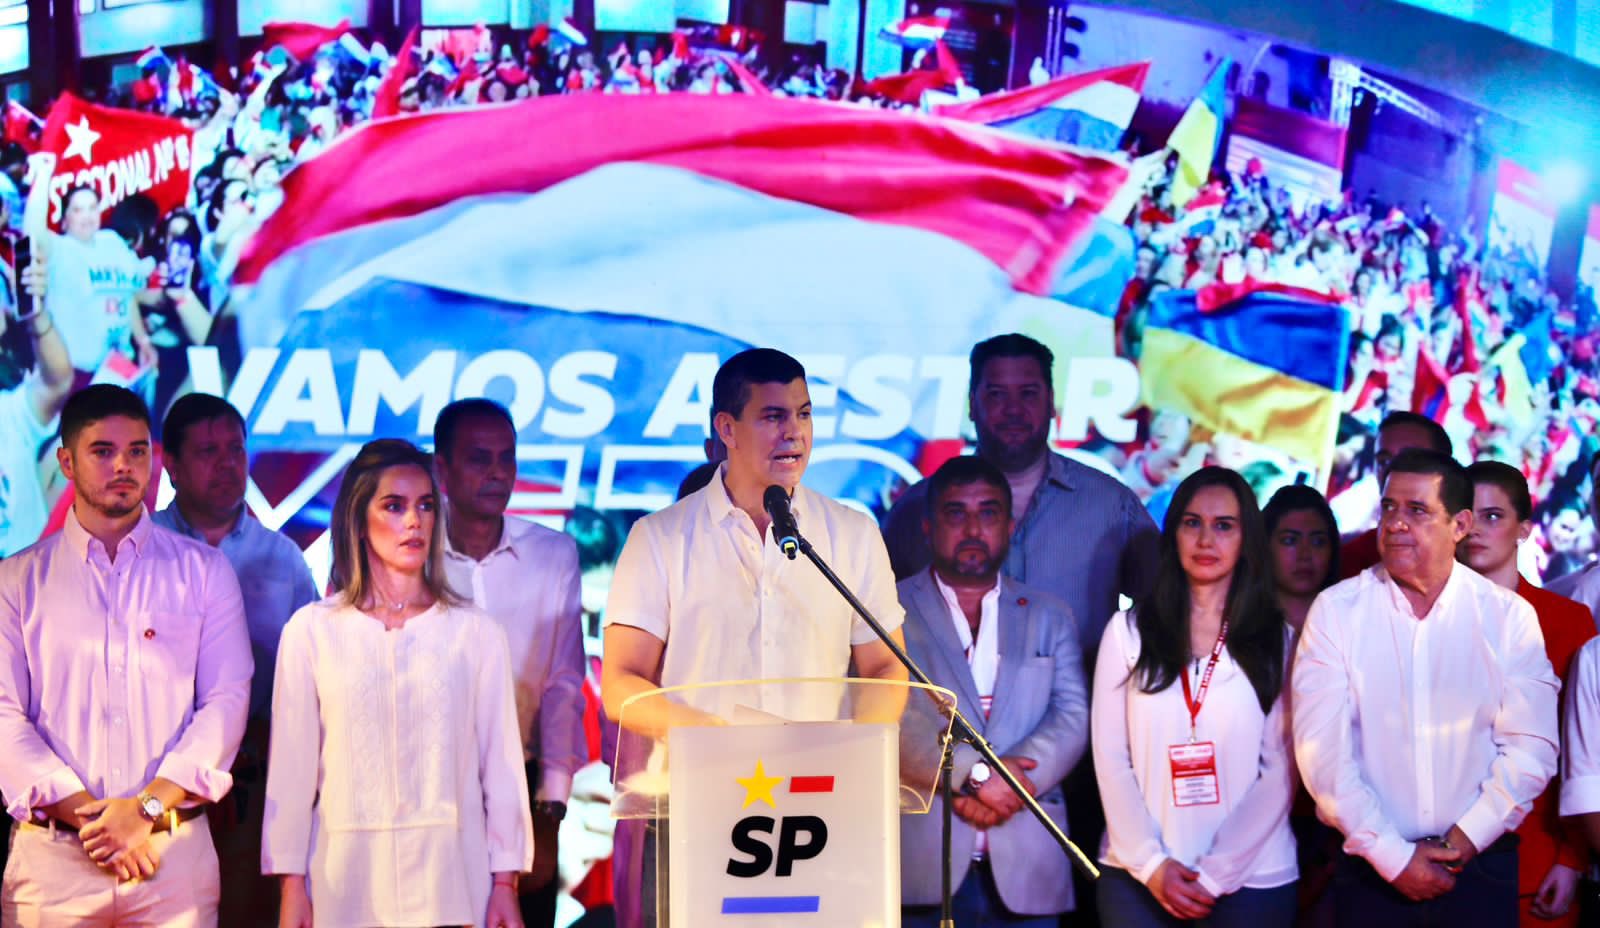 Paraguay: Ganó Peña y los Colorados sigue en el poder